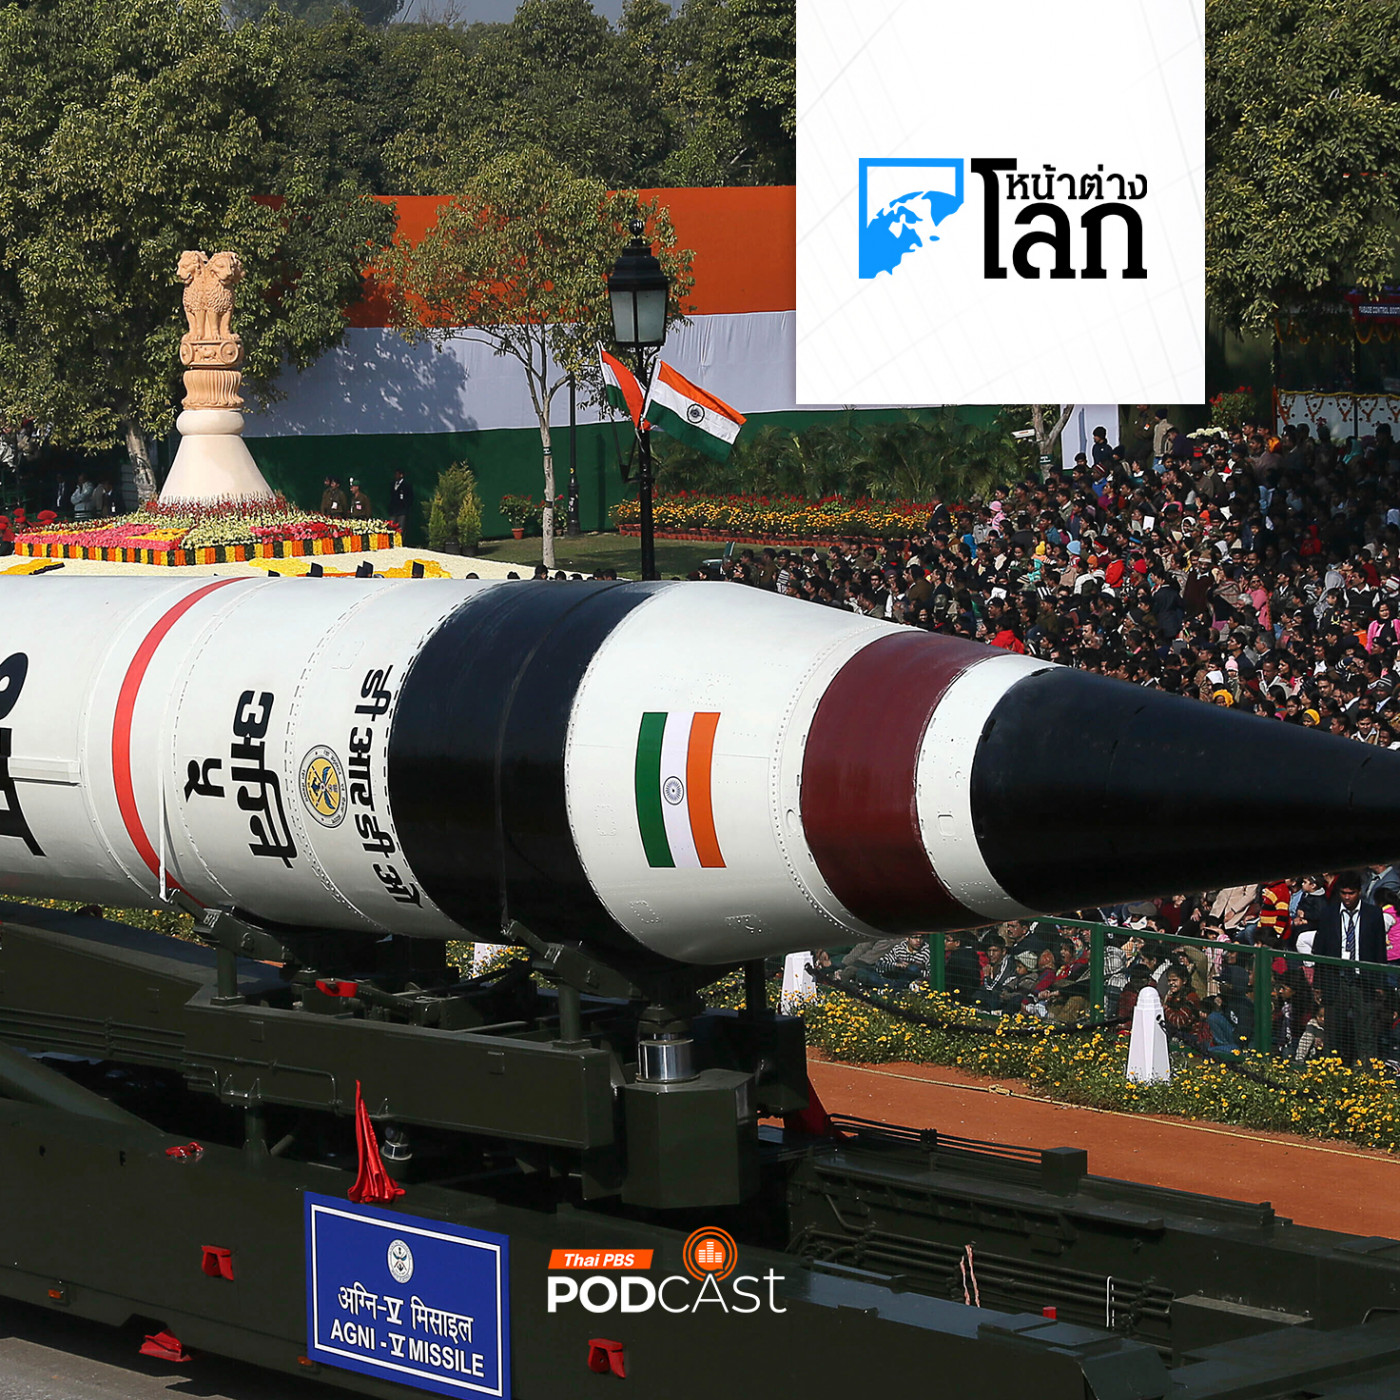 หน้าต่างโลก : อินเดียทดสอบขีปนาวุธหลายหัวรบสำเร็จ